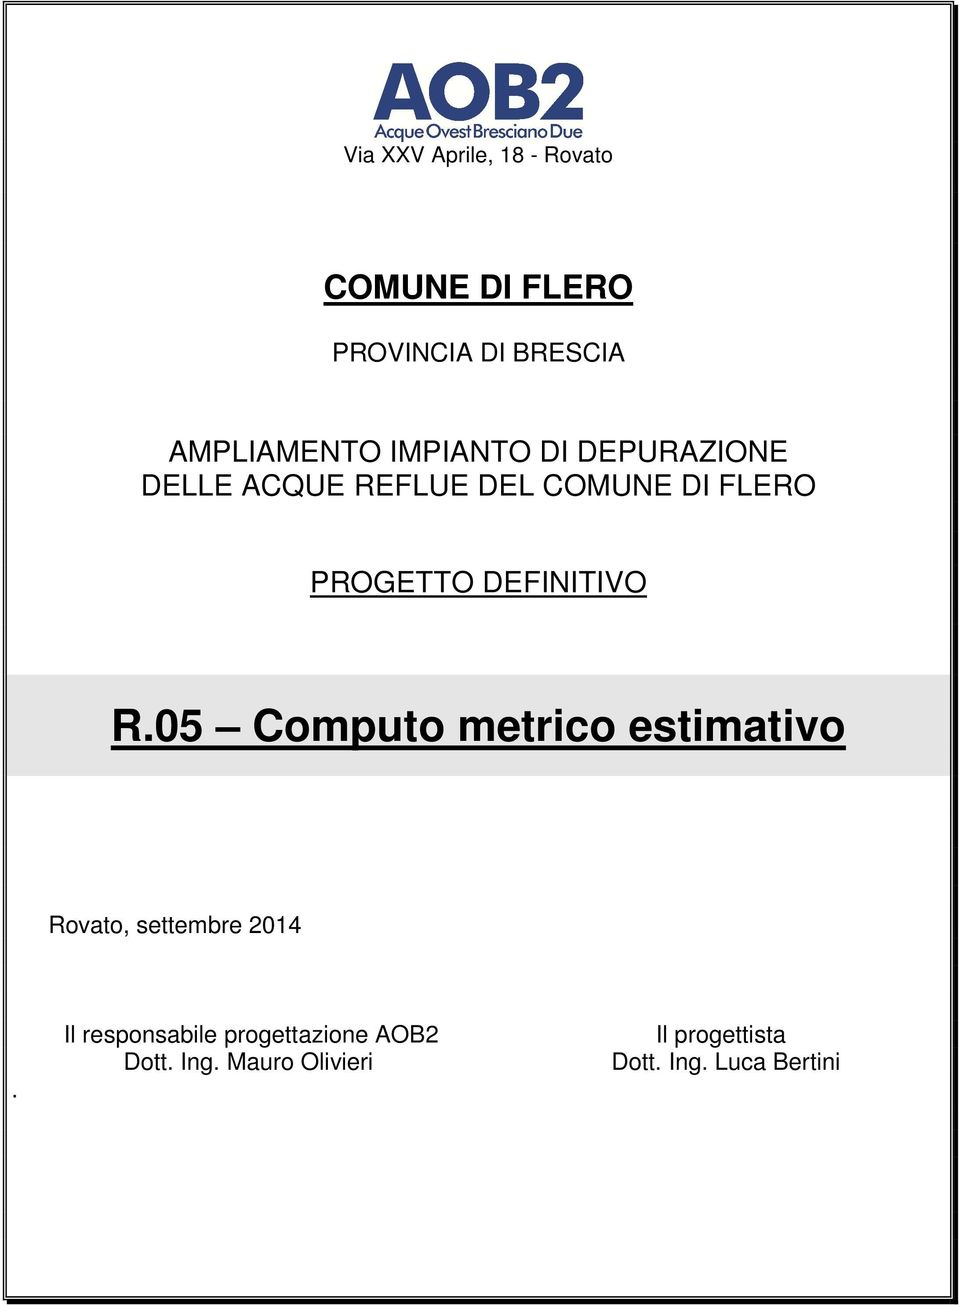 DEFINITIVO R.05 Computo metrico estimativo Rovato, settembre 2014.